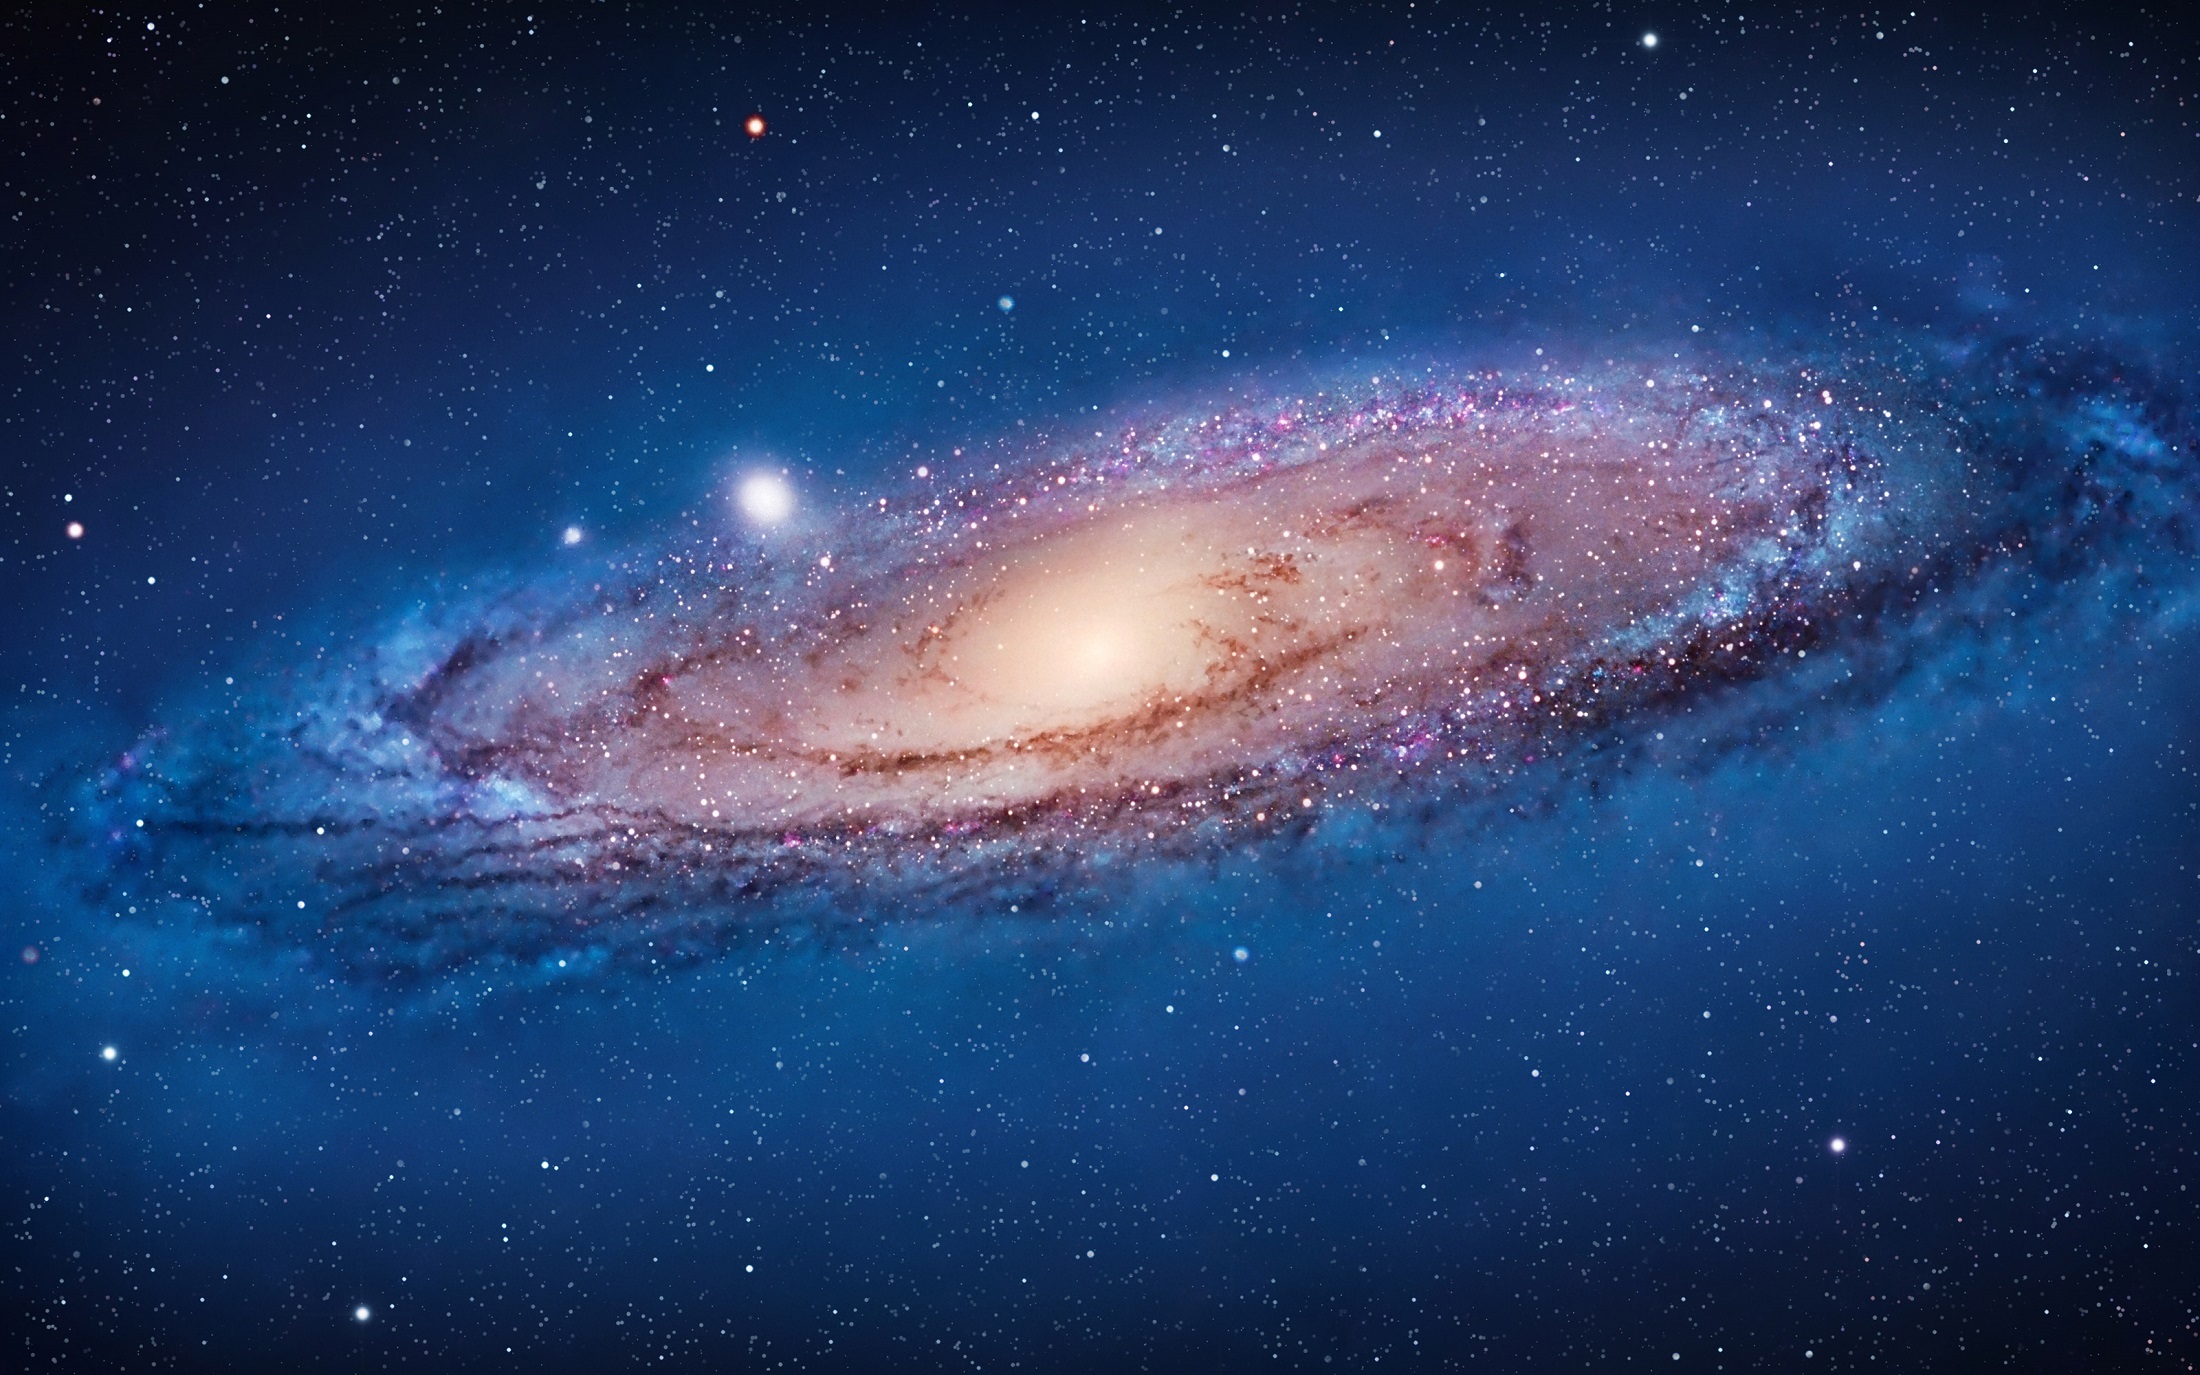 Andromeda galaxy photo